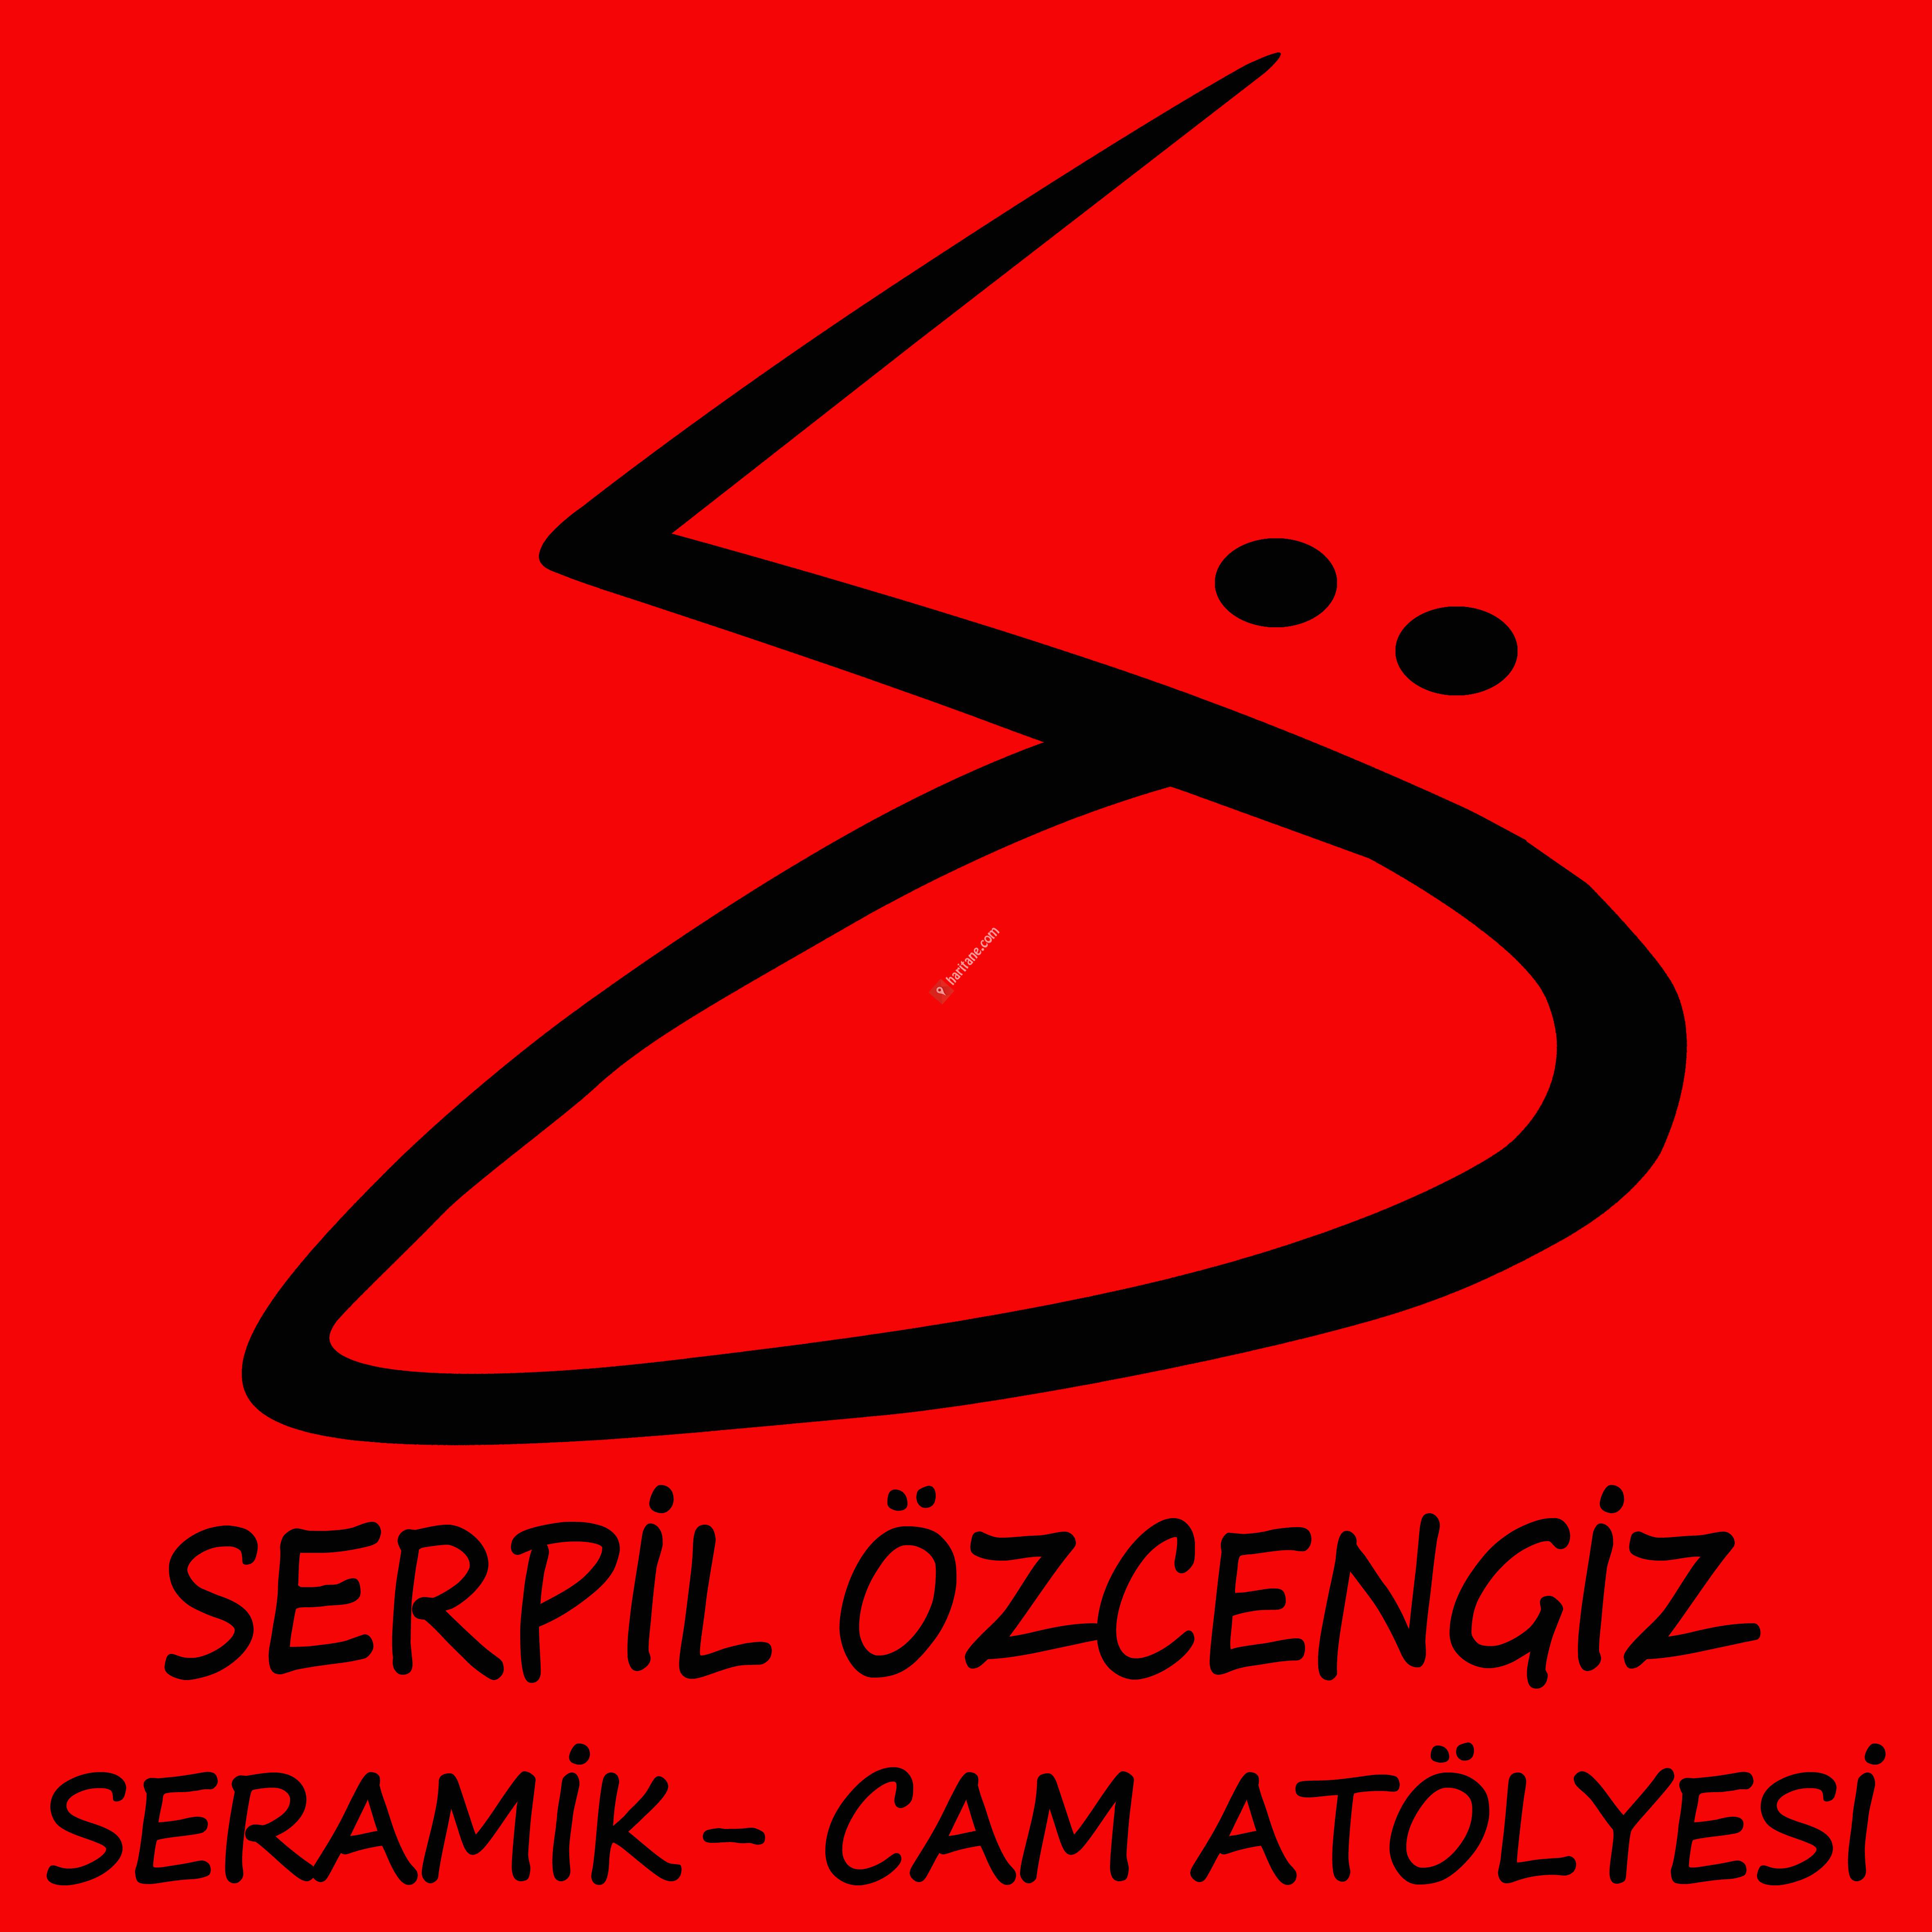 Serpil Özcengiz,Seramik-Cam Atölyesi